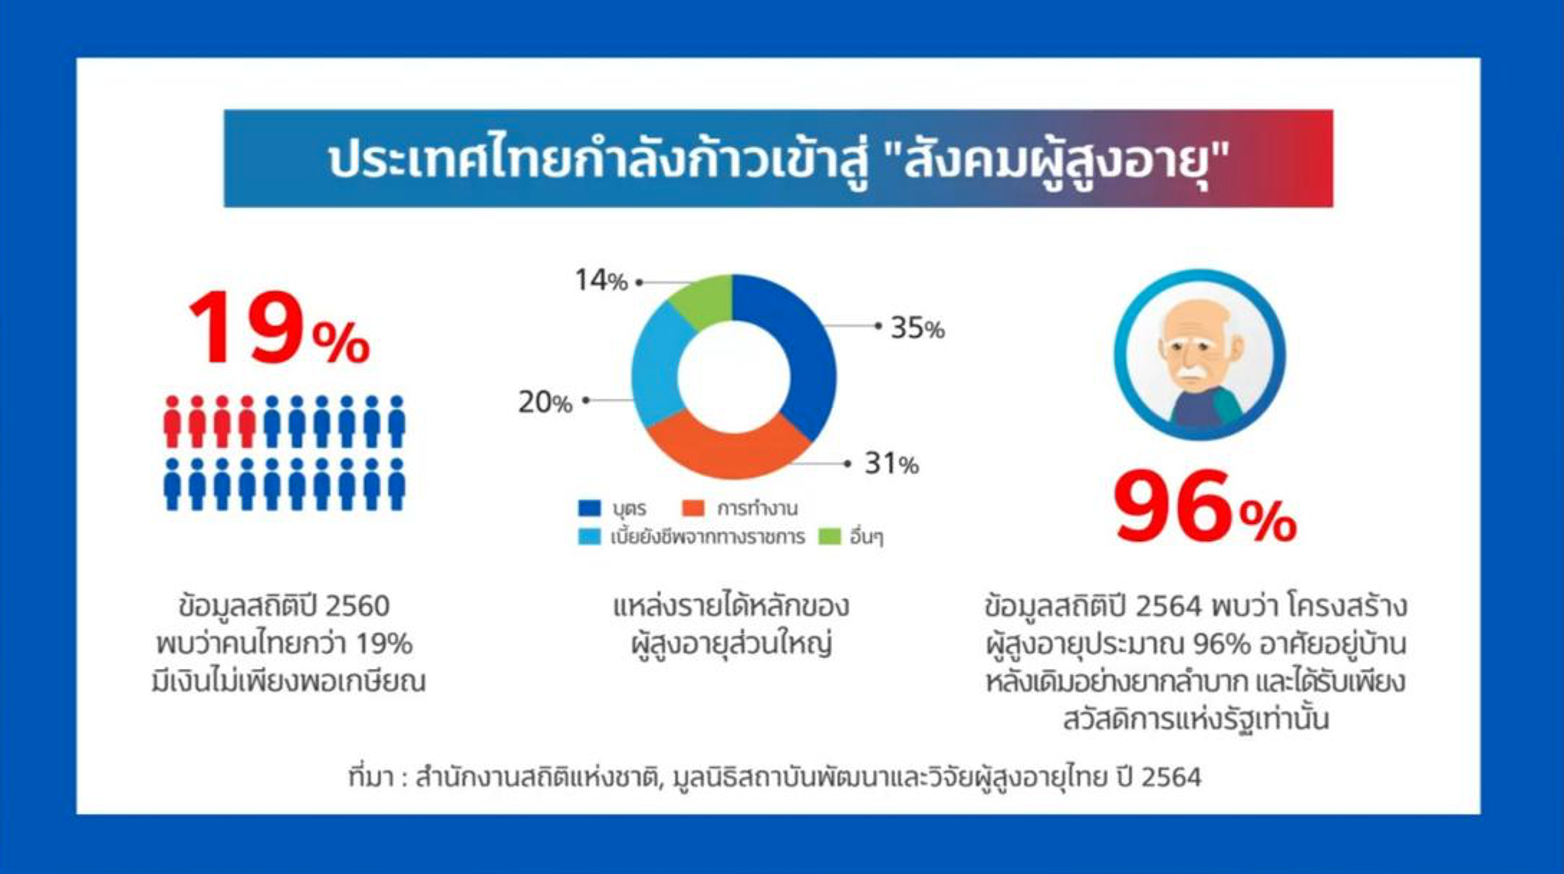 ข่าวดี…คนไทยใกล้อายุยืน 100 ปี ข่าวร้าย…หลังเกษียณอาจมีเงินไม่พอใช้